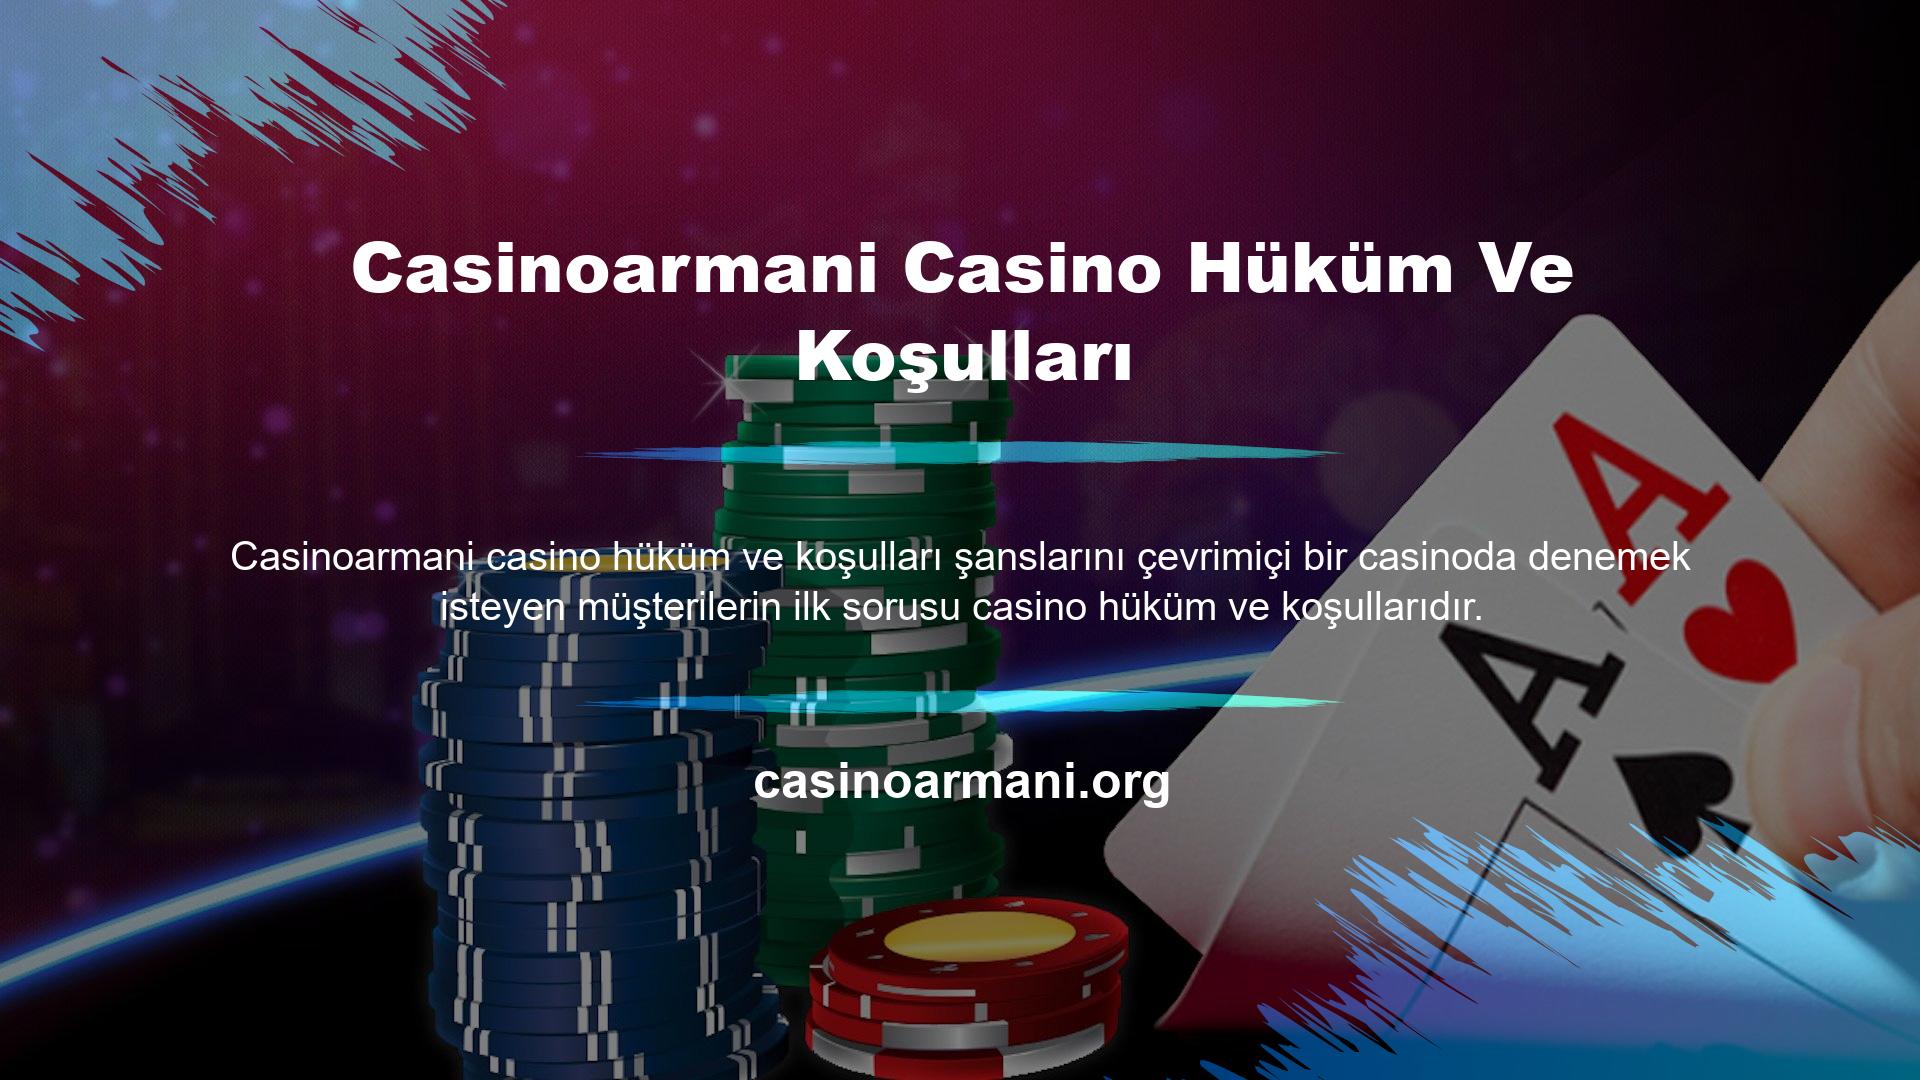 Casinoarmani casino oyuncularına koşulsuz hizmet sunmaktadır